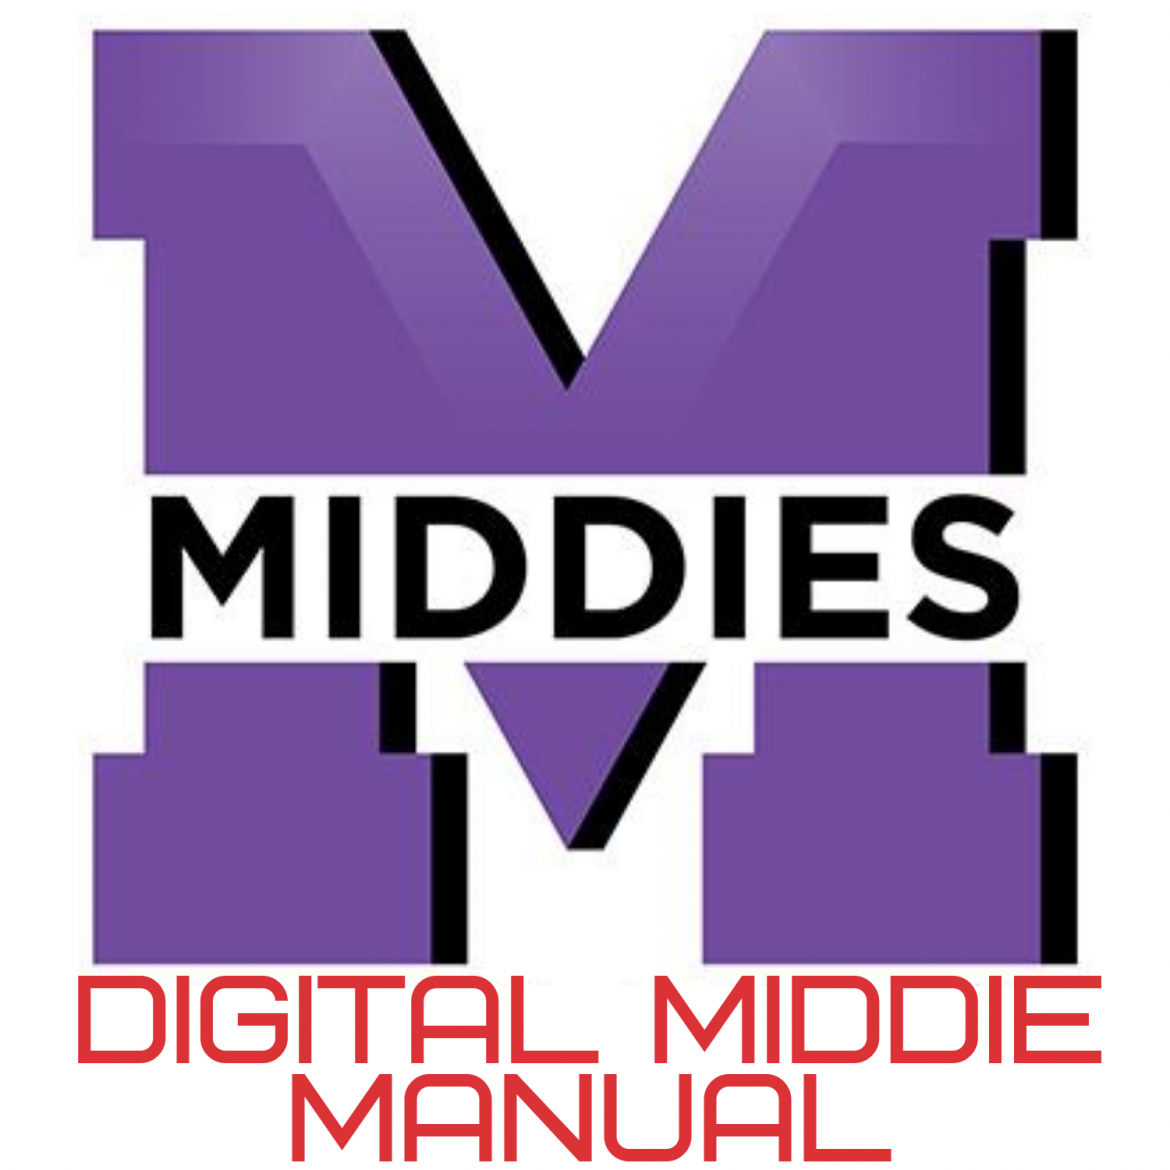 Middies Digital Middie Manual